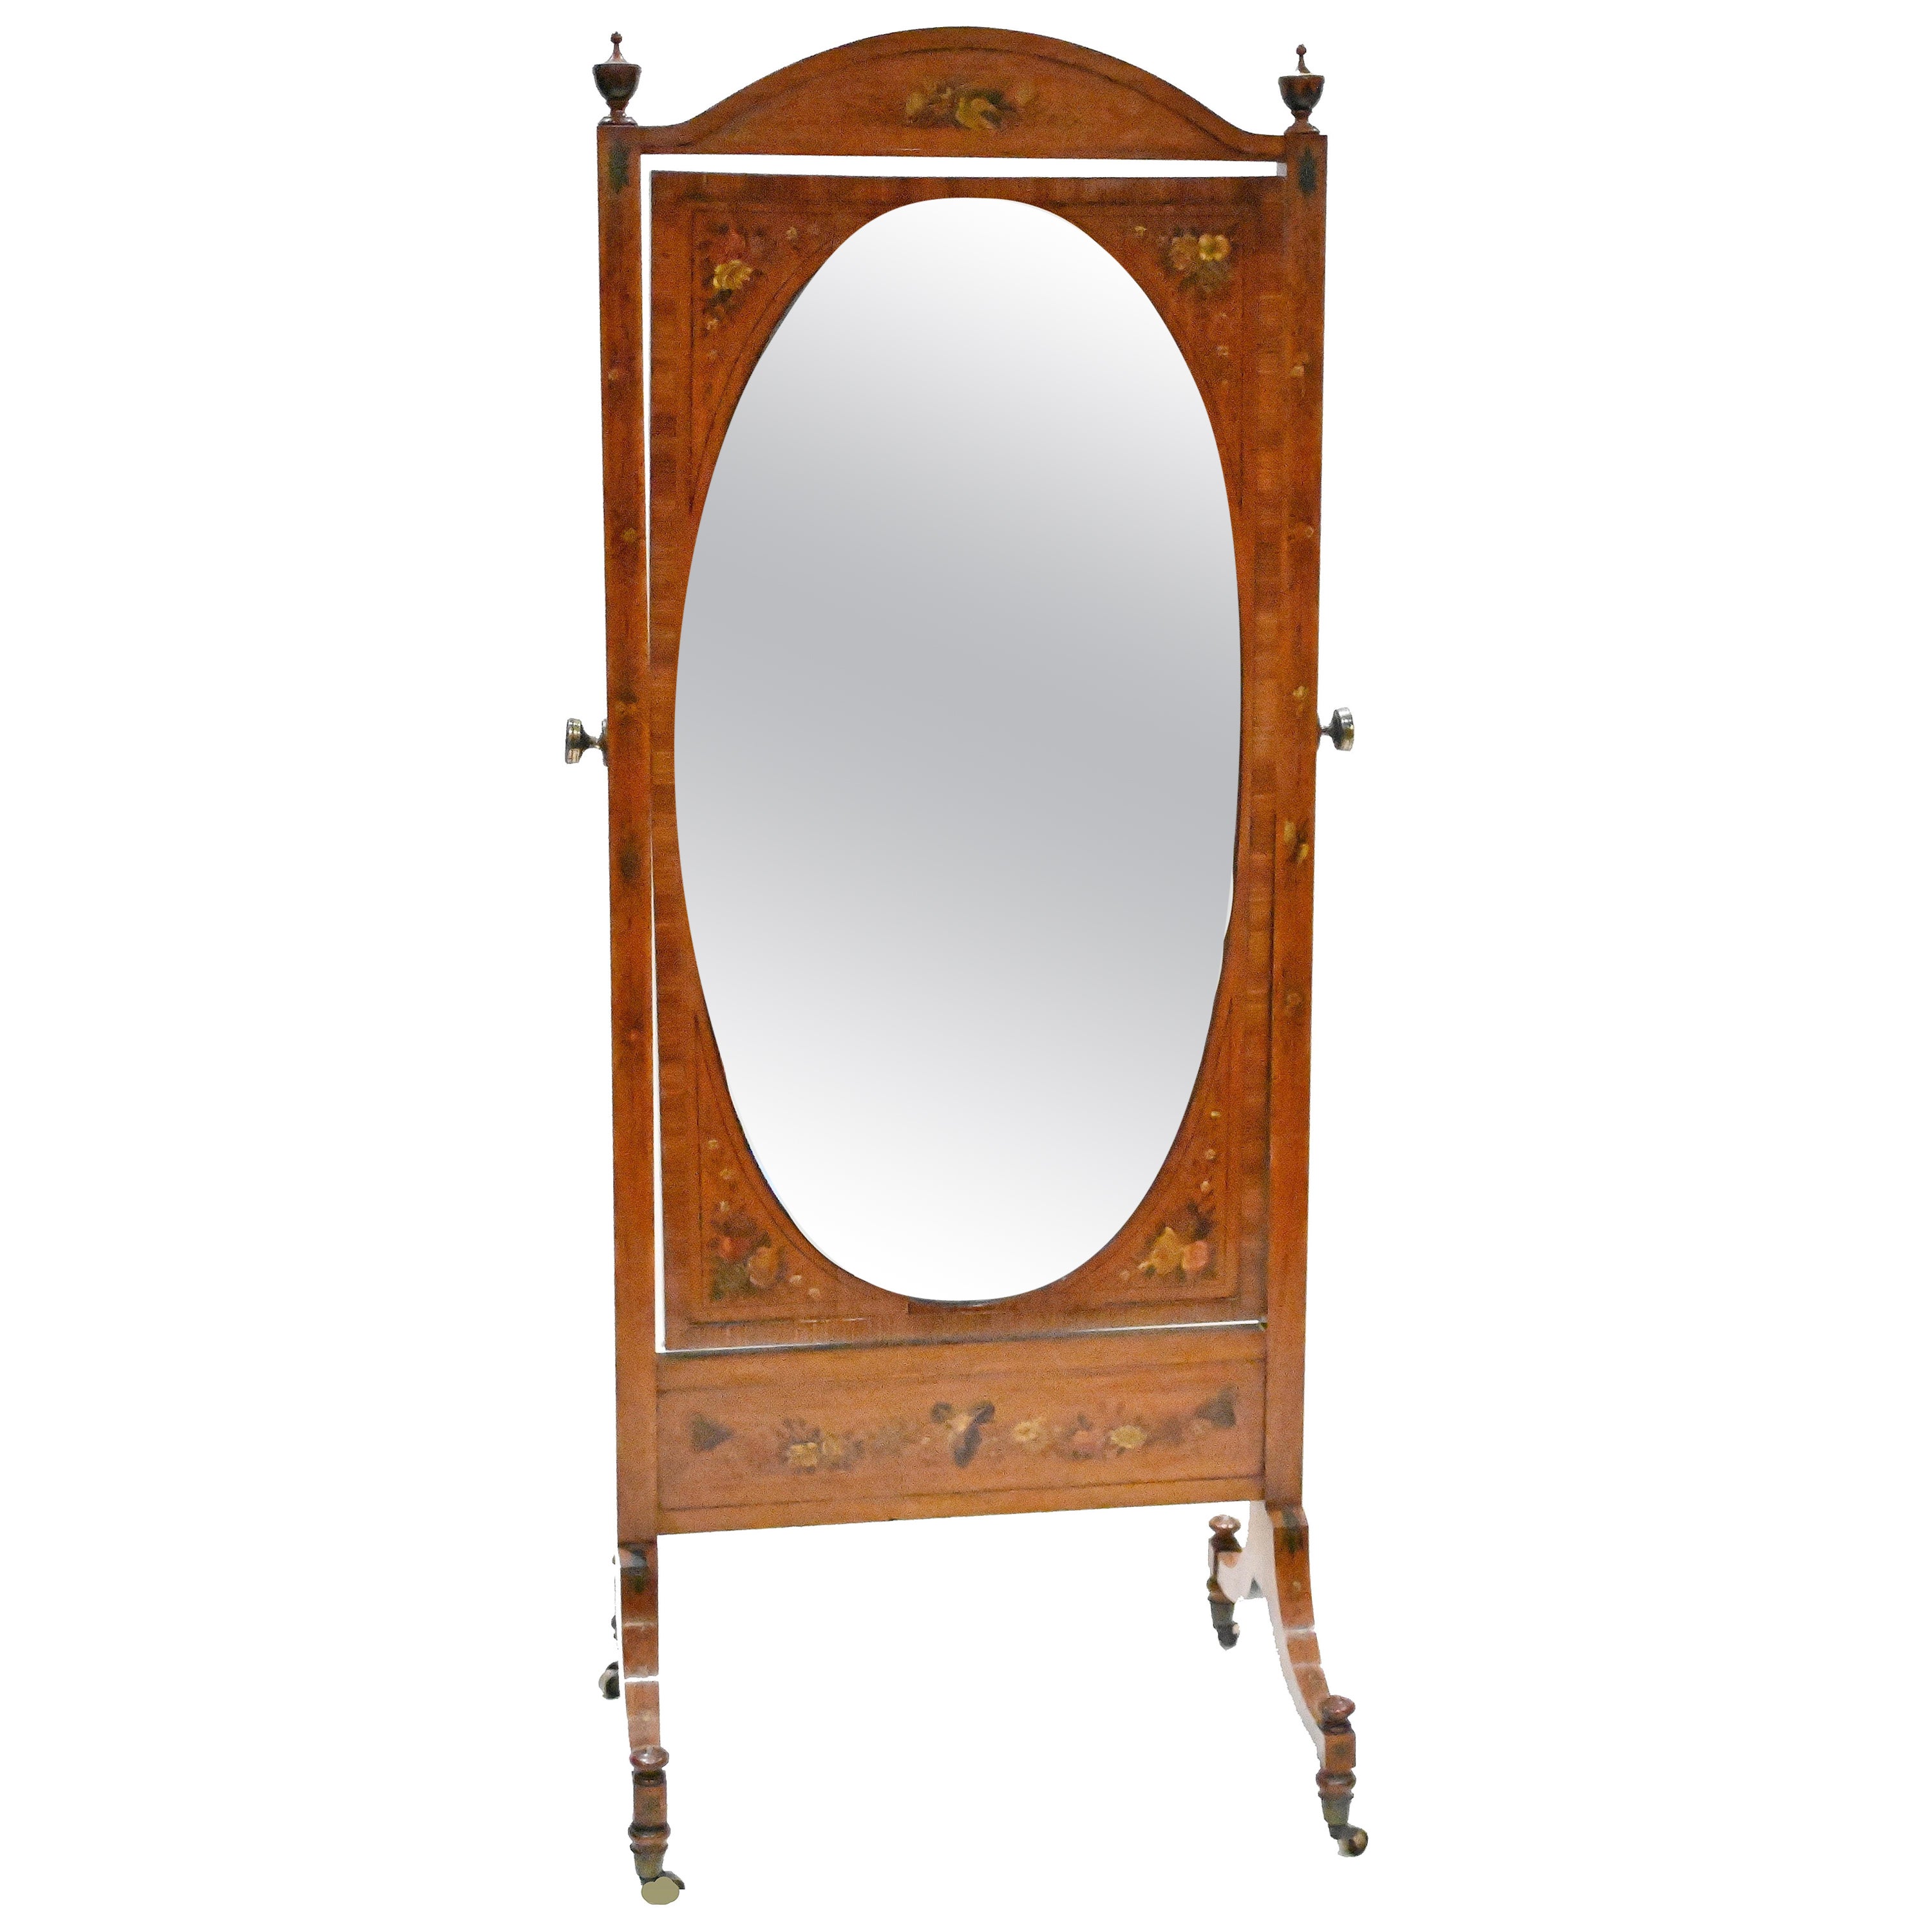 Adams Painted Cheval Mirror Satinwood Floor Mirrors 1910 For Sale